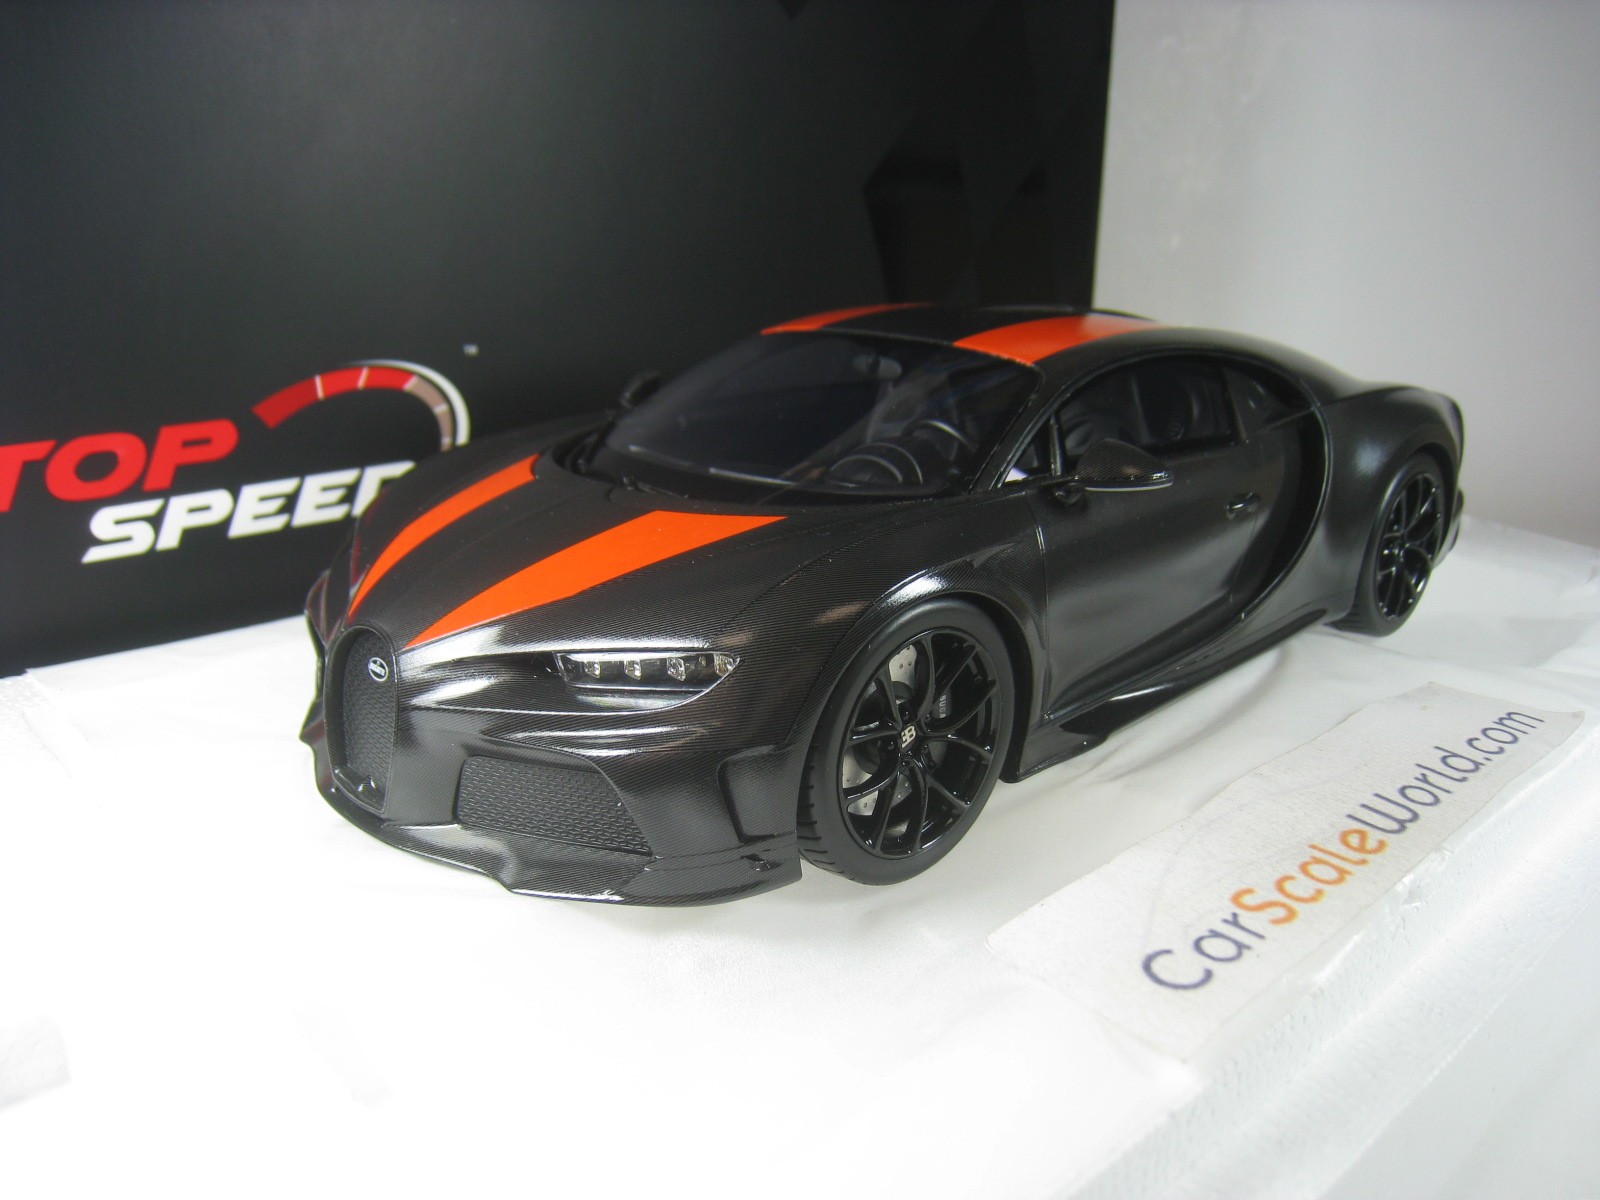 Por qué el Bugatti Chiron Super Sport 300+ es distinto al Chiron?